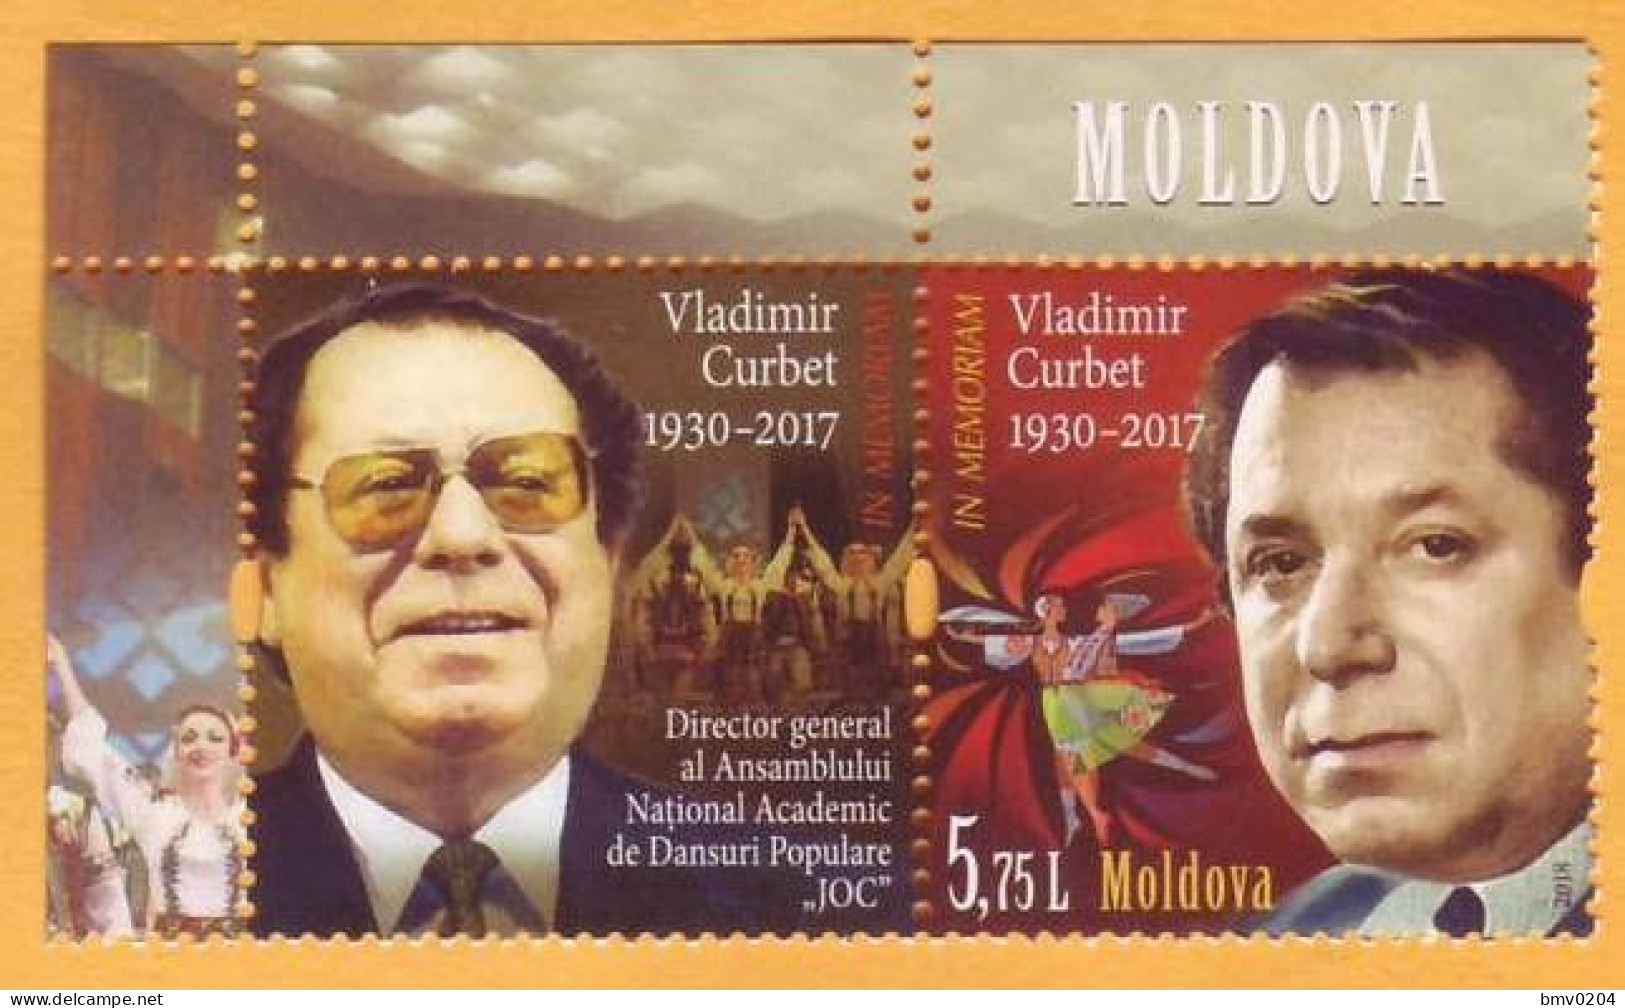 2018 Moldova Moldavie In Memory Vladimir Kurbet Curbet. Artist. Dancing. Ensemble "JOC" 1v Mint - Baile